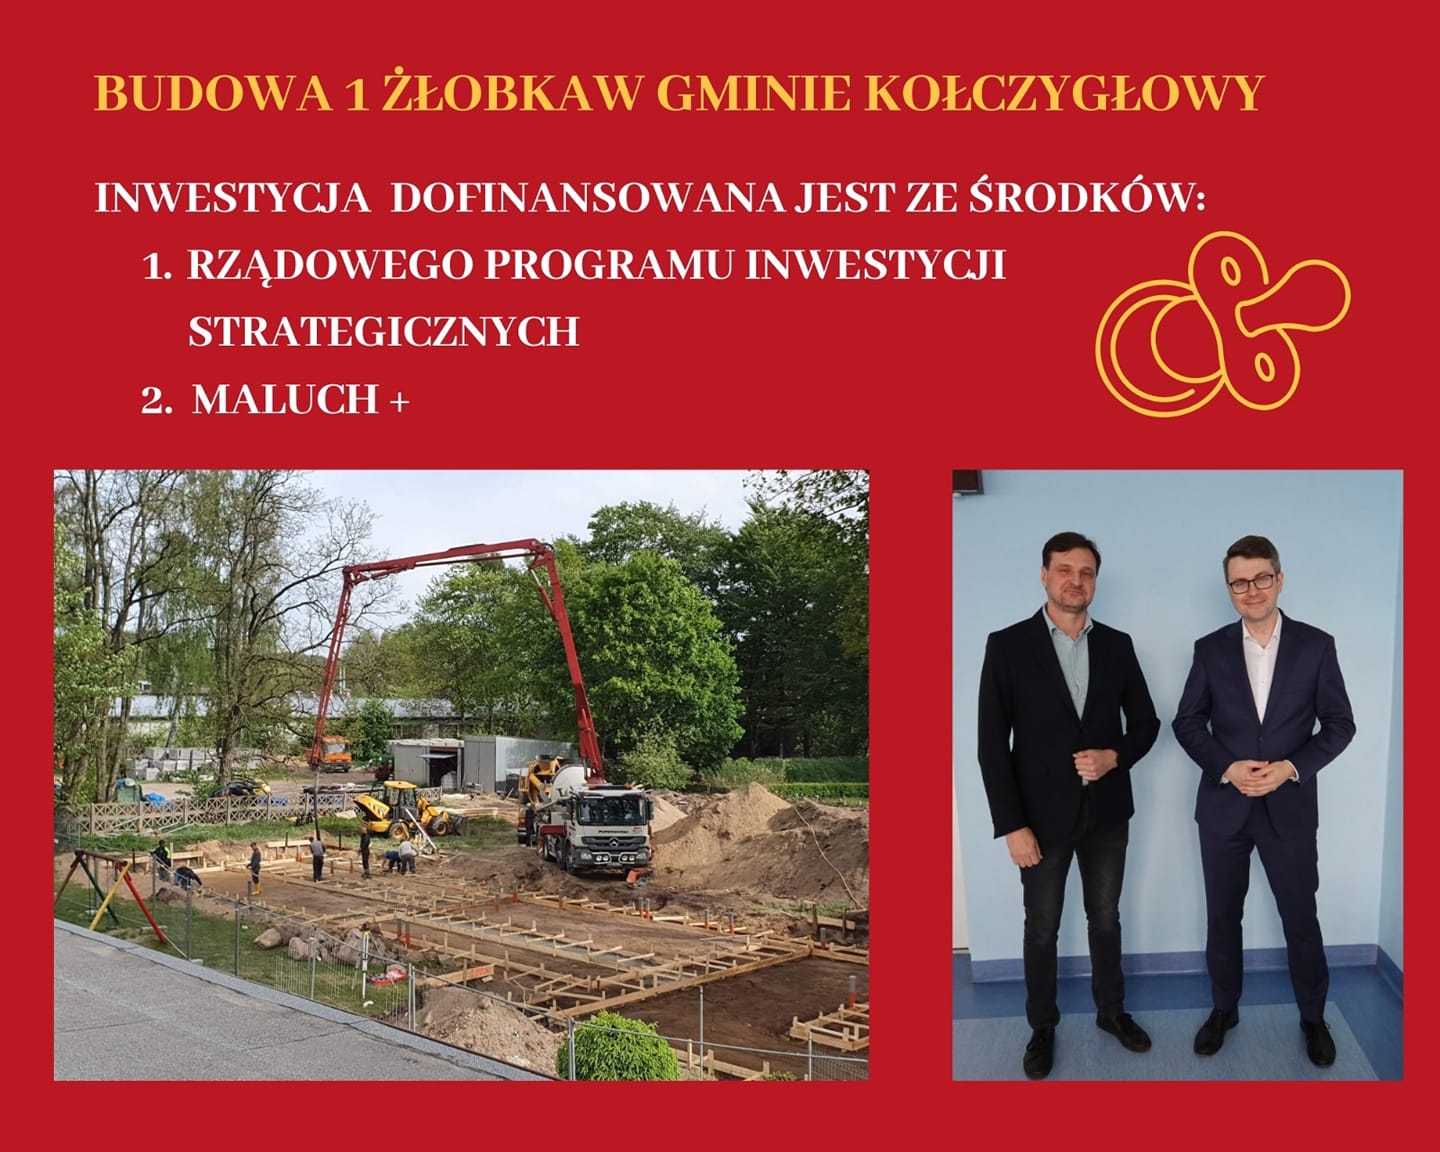 11 maja wójt Artur Kalinowski zawarł umowę na wykonanie robót budowlanych związanych z budową pierwszego gminnego żłobka w miejscowości Kołczygłowy, a już dwa tygodnie później rozpoczęły się prace!